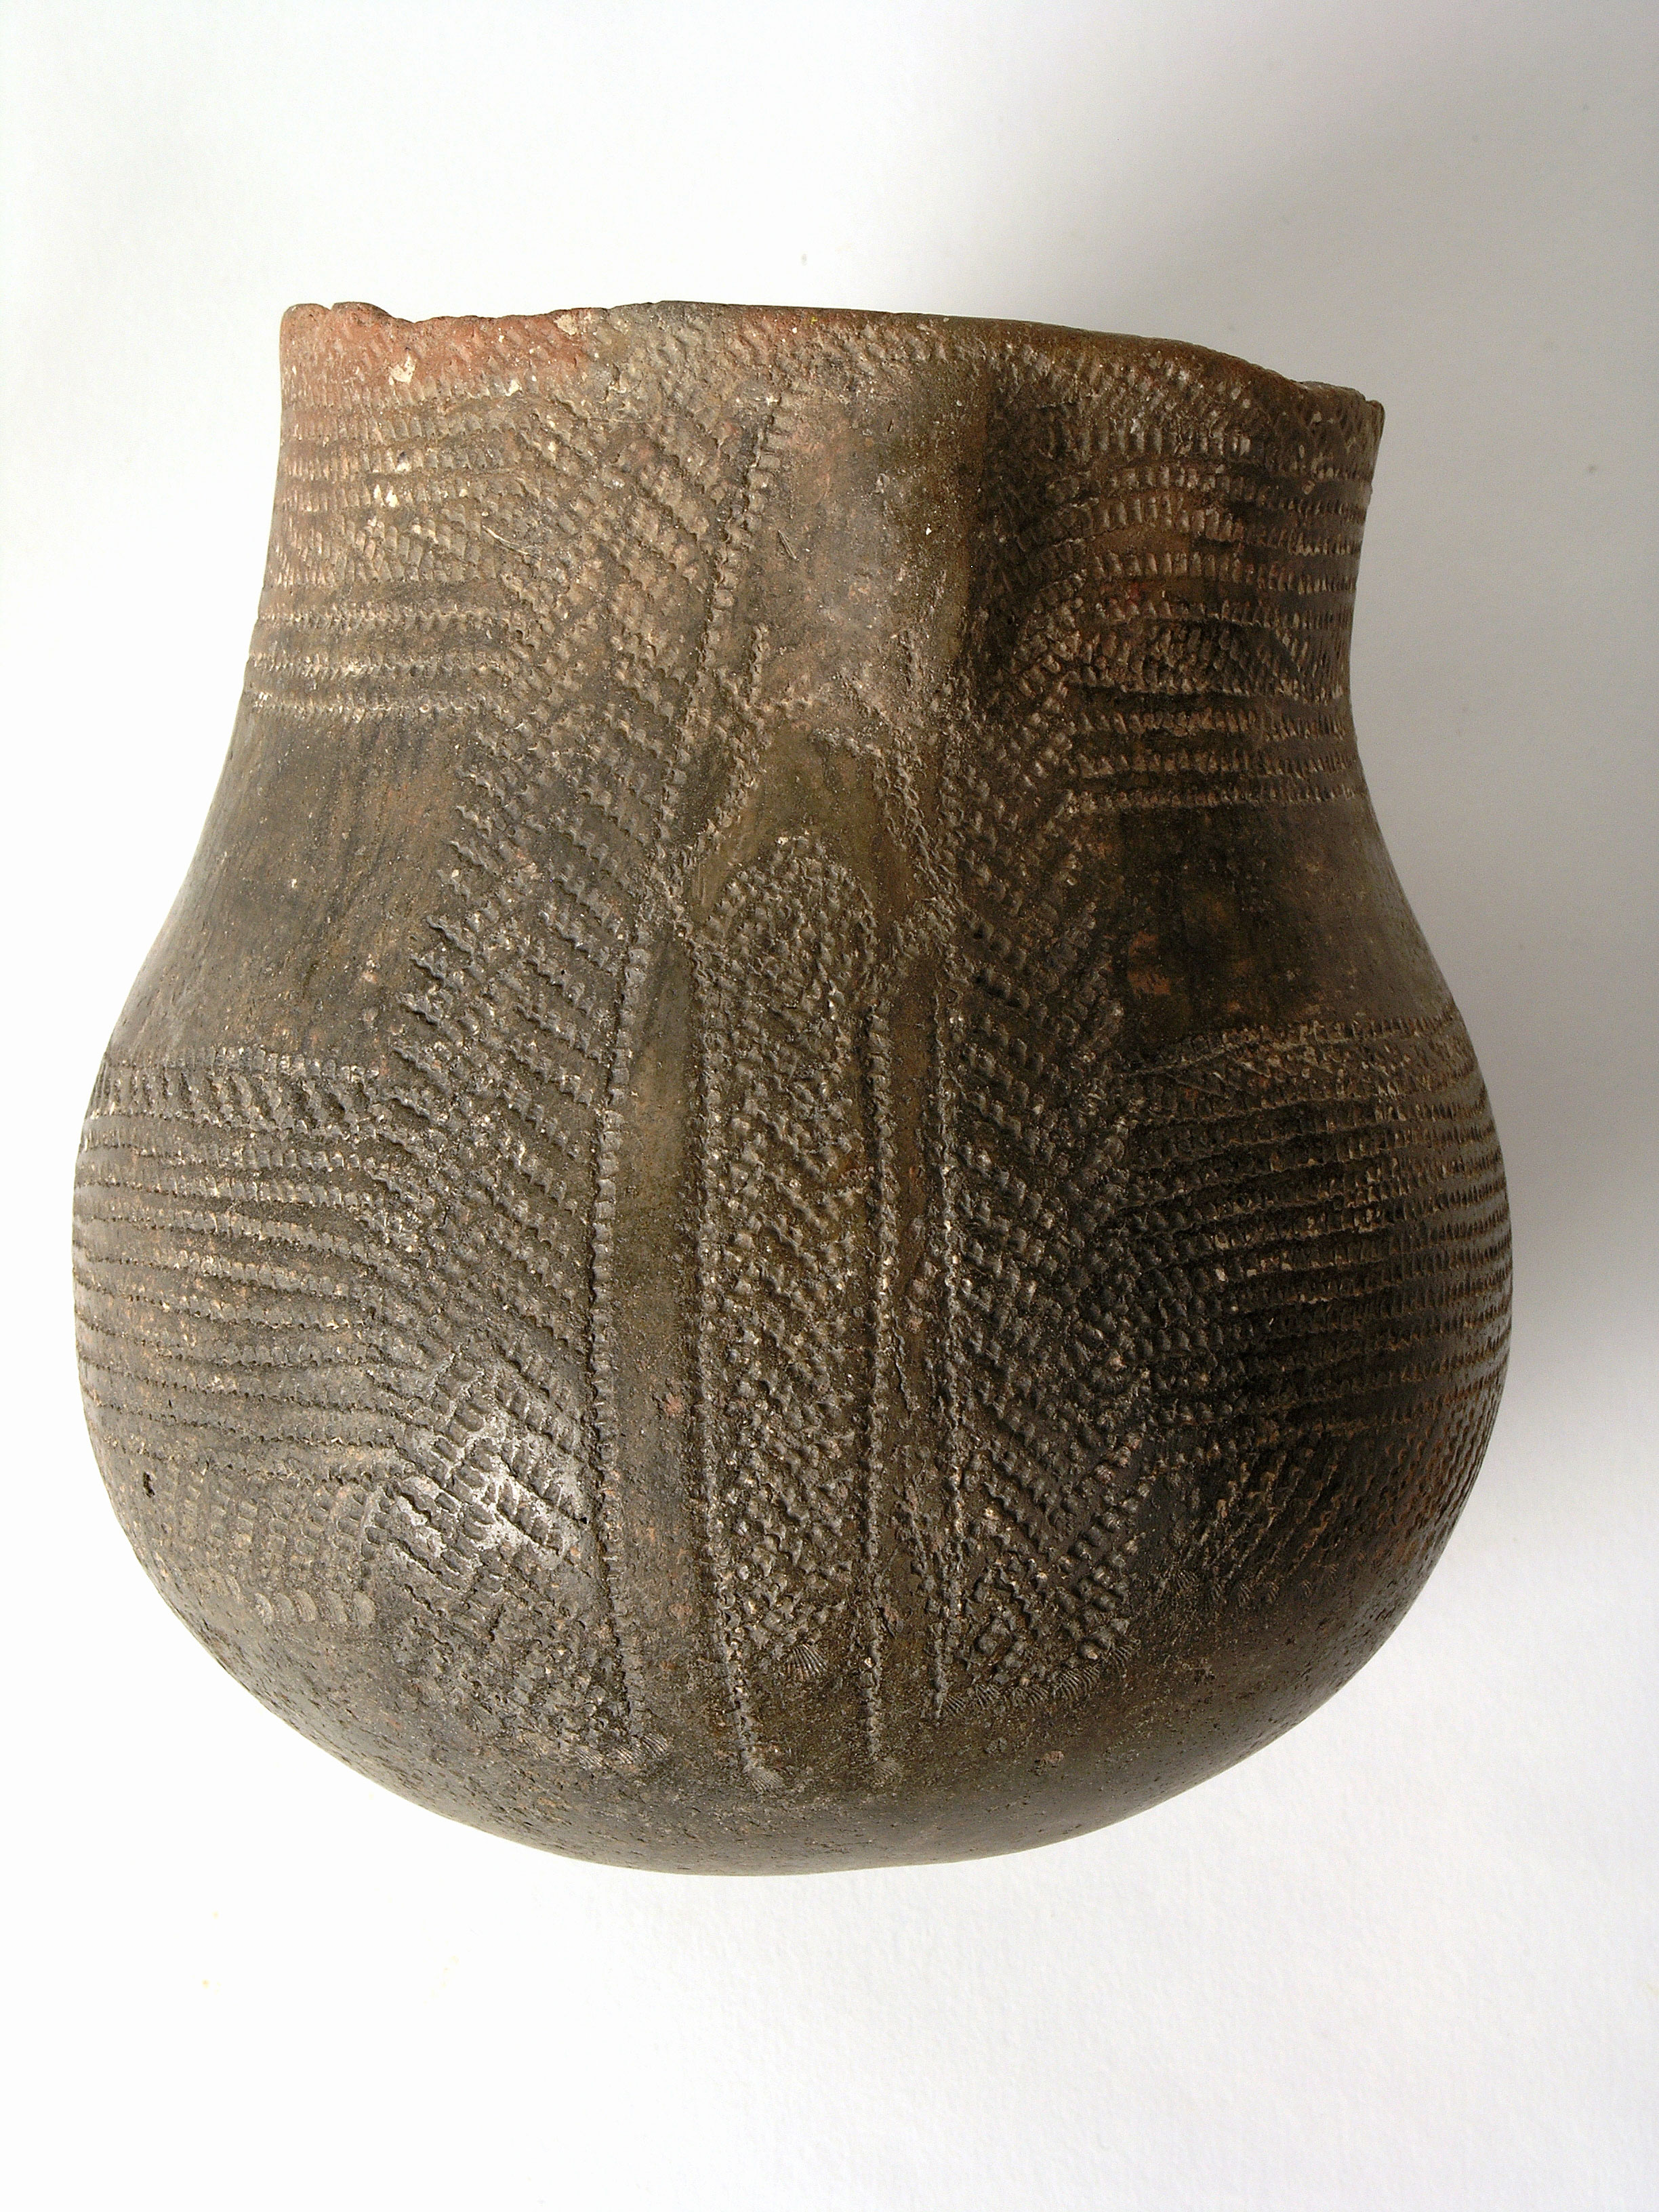 'Vas de l'Orant', ceràmica amb decoració impresa cardial. Neolític